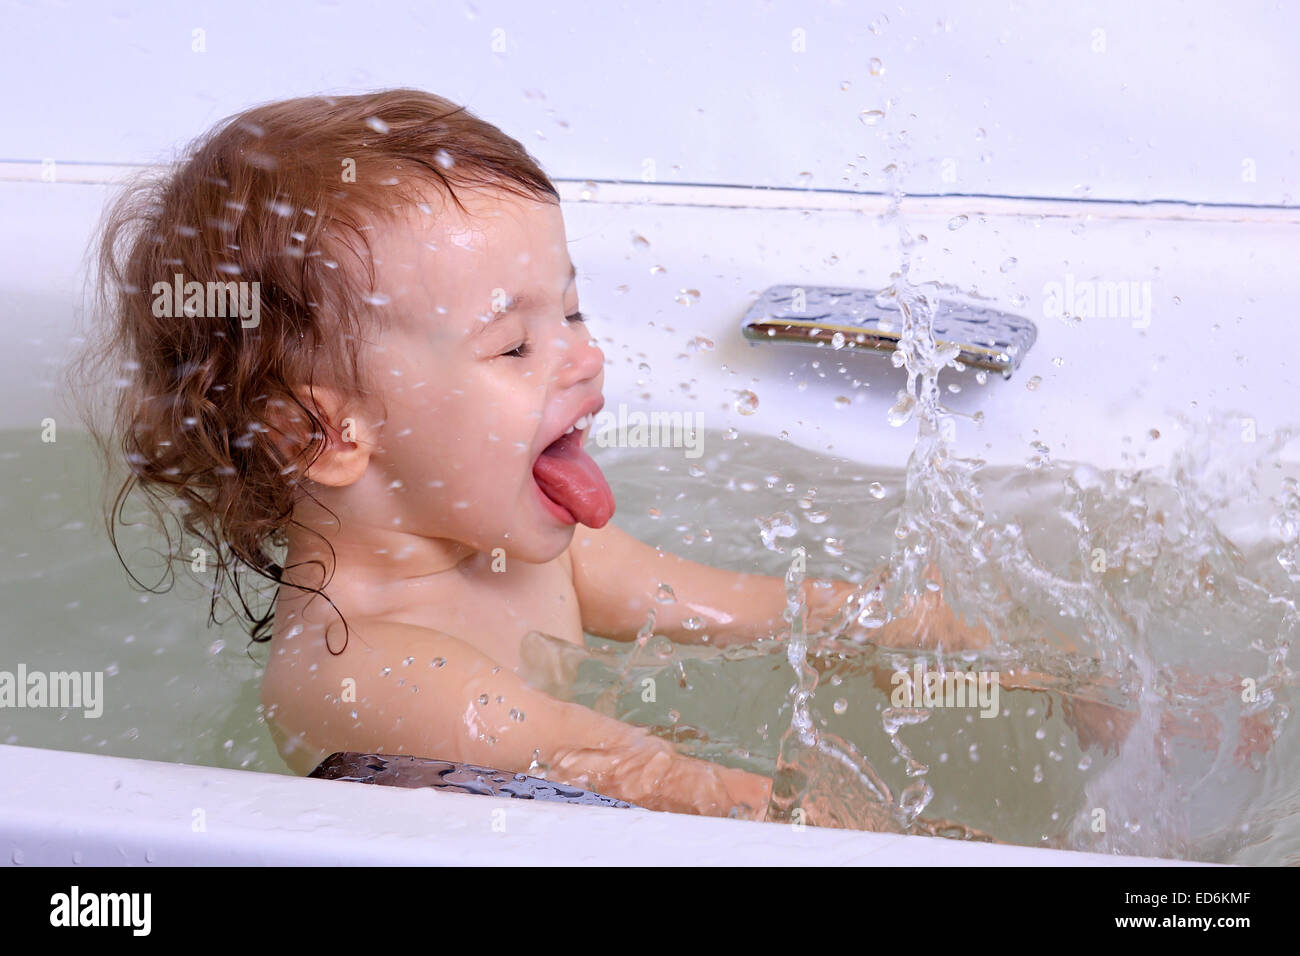 Дочка моется перед школой. Голышом дочка в ванной купается. Доченька моется. Мальчик зовет купаться фотография. Дочка мылась в душе